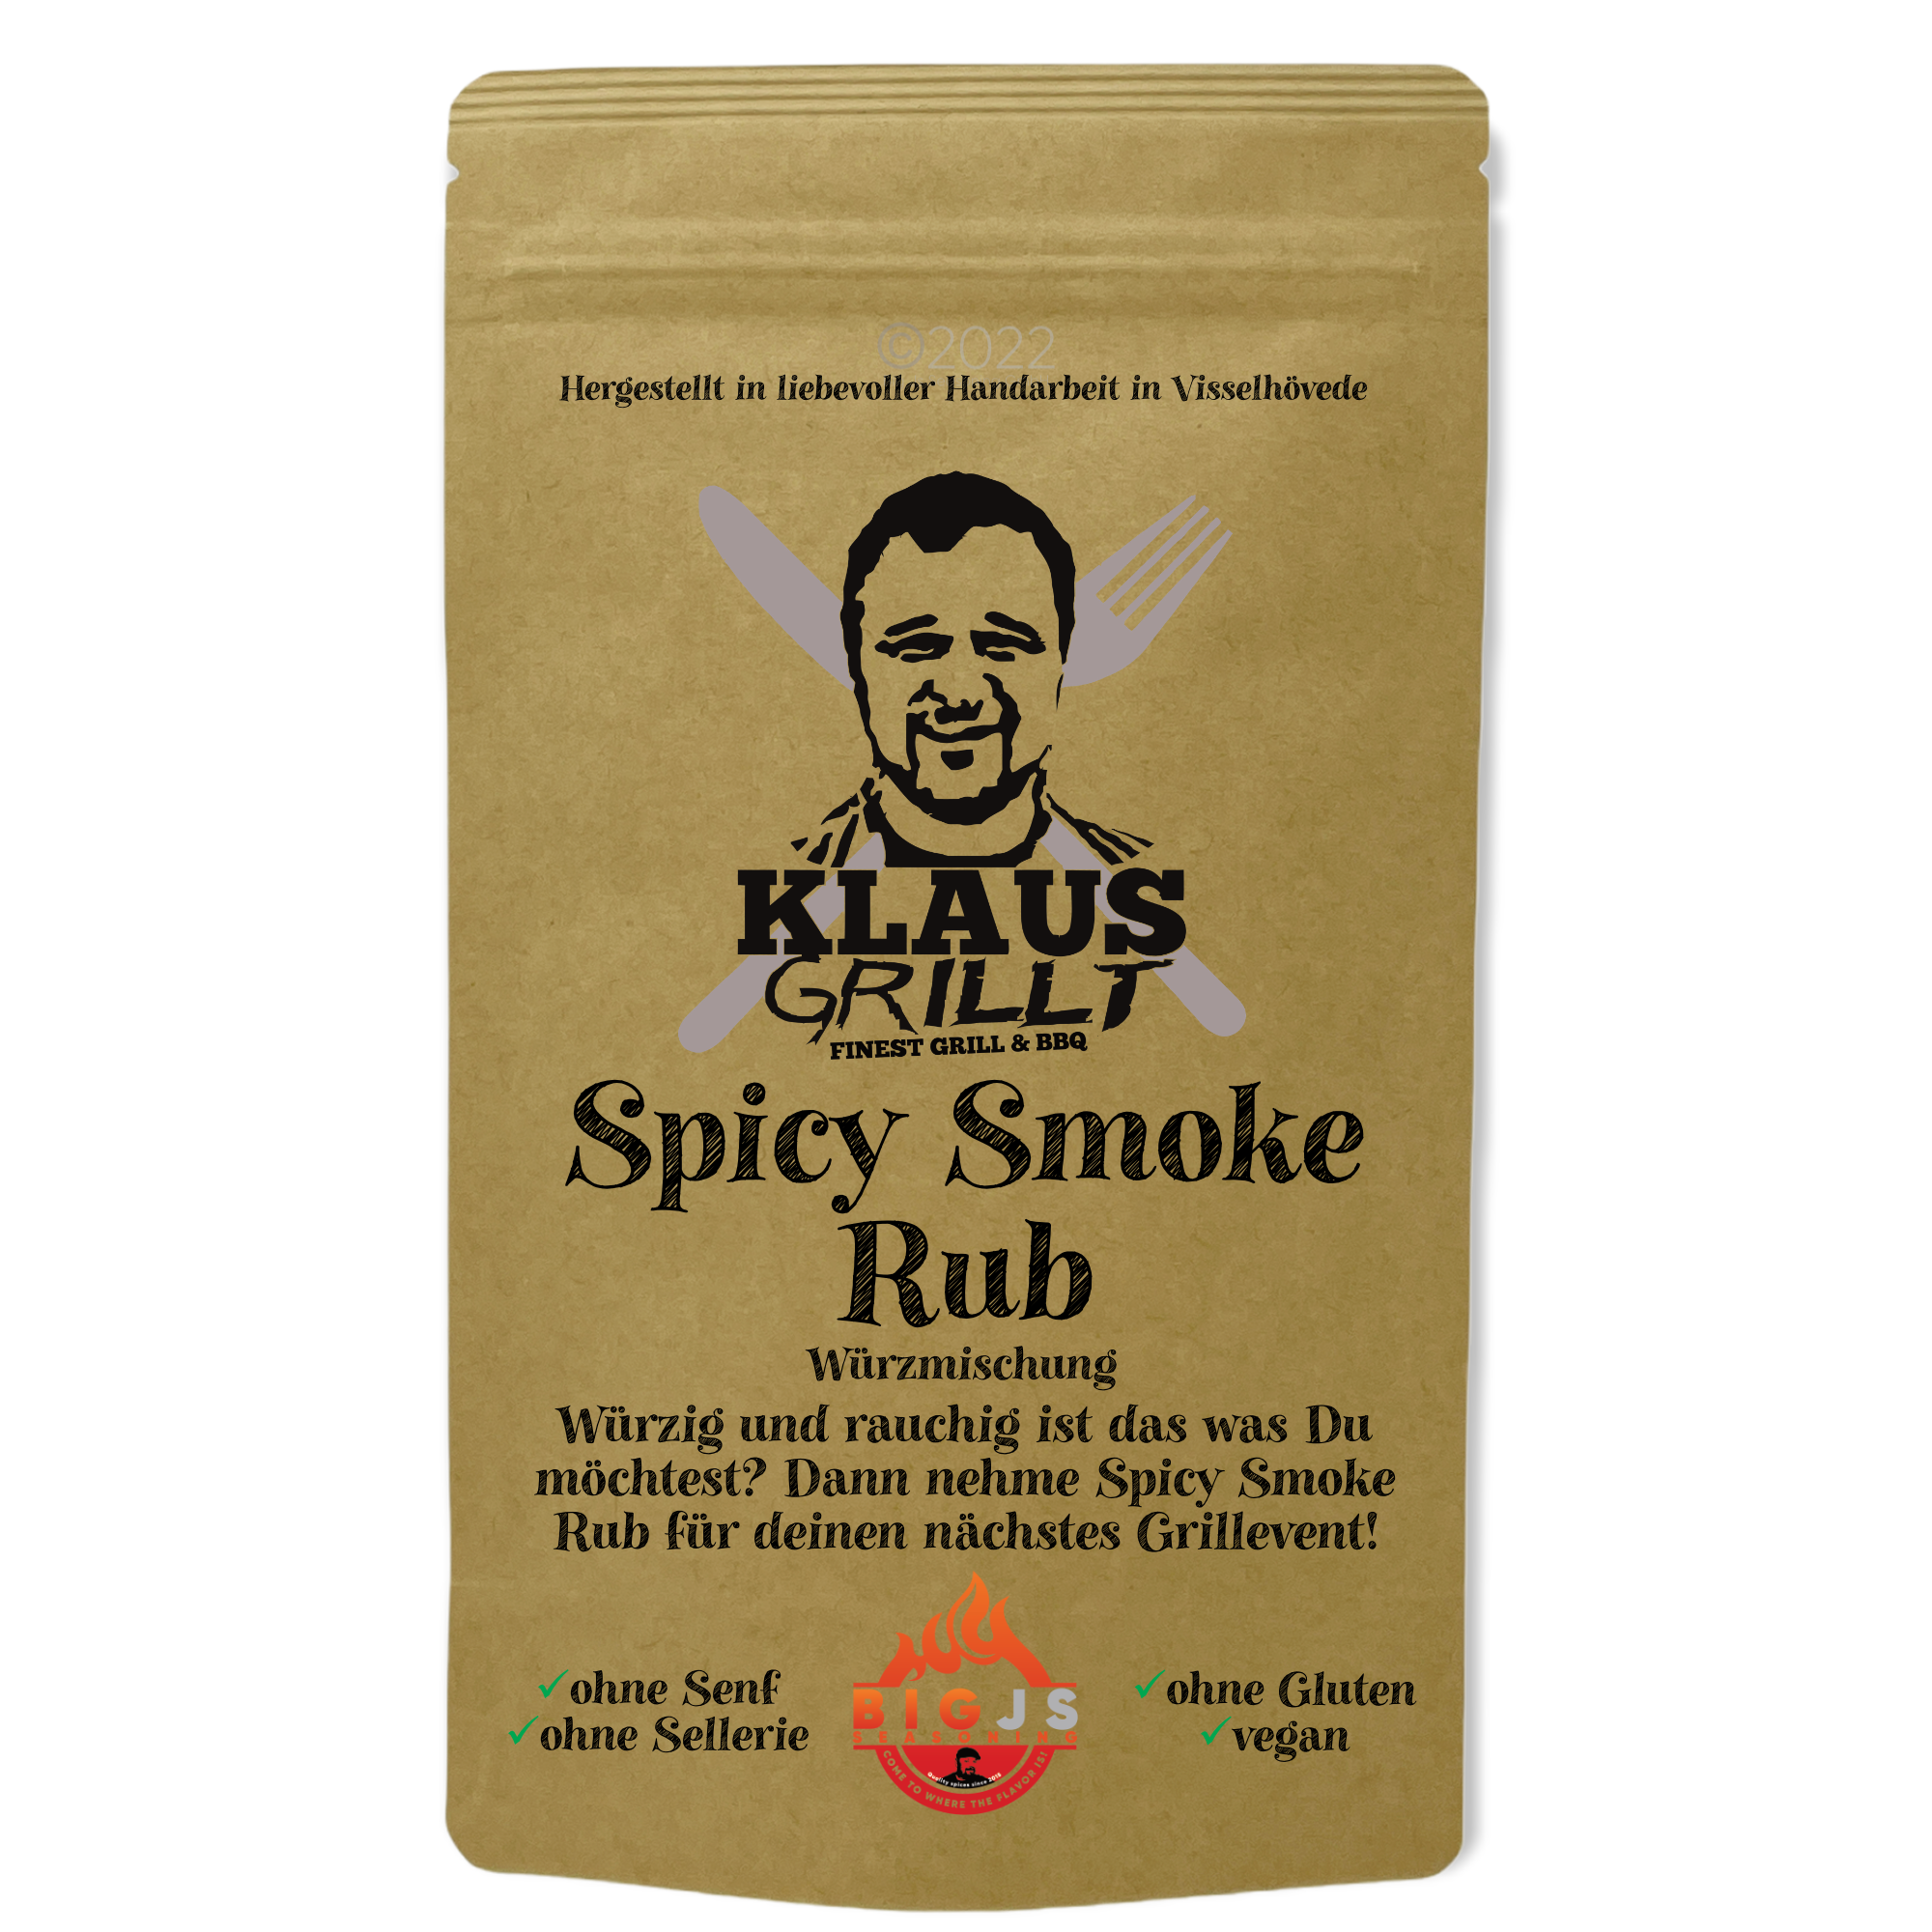 Klaus grillt Spicy Smoke Rub 250g Beutel